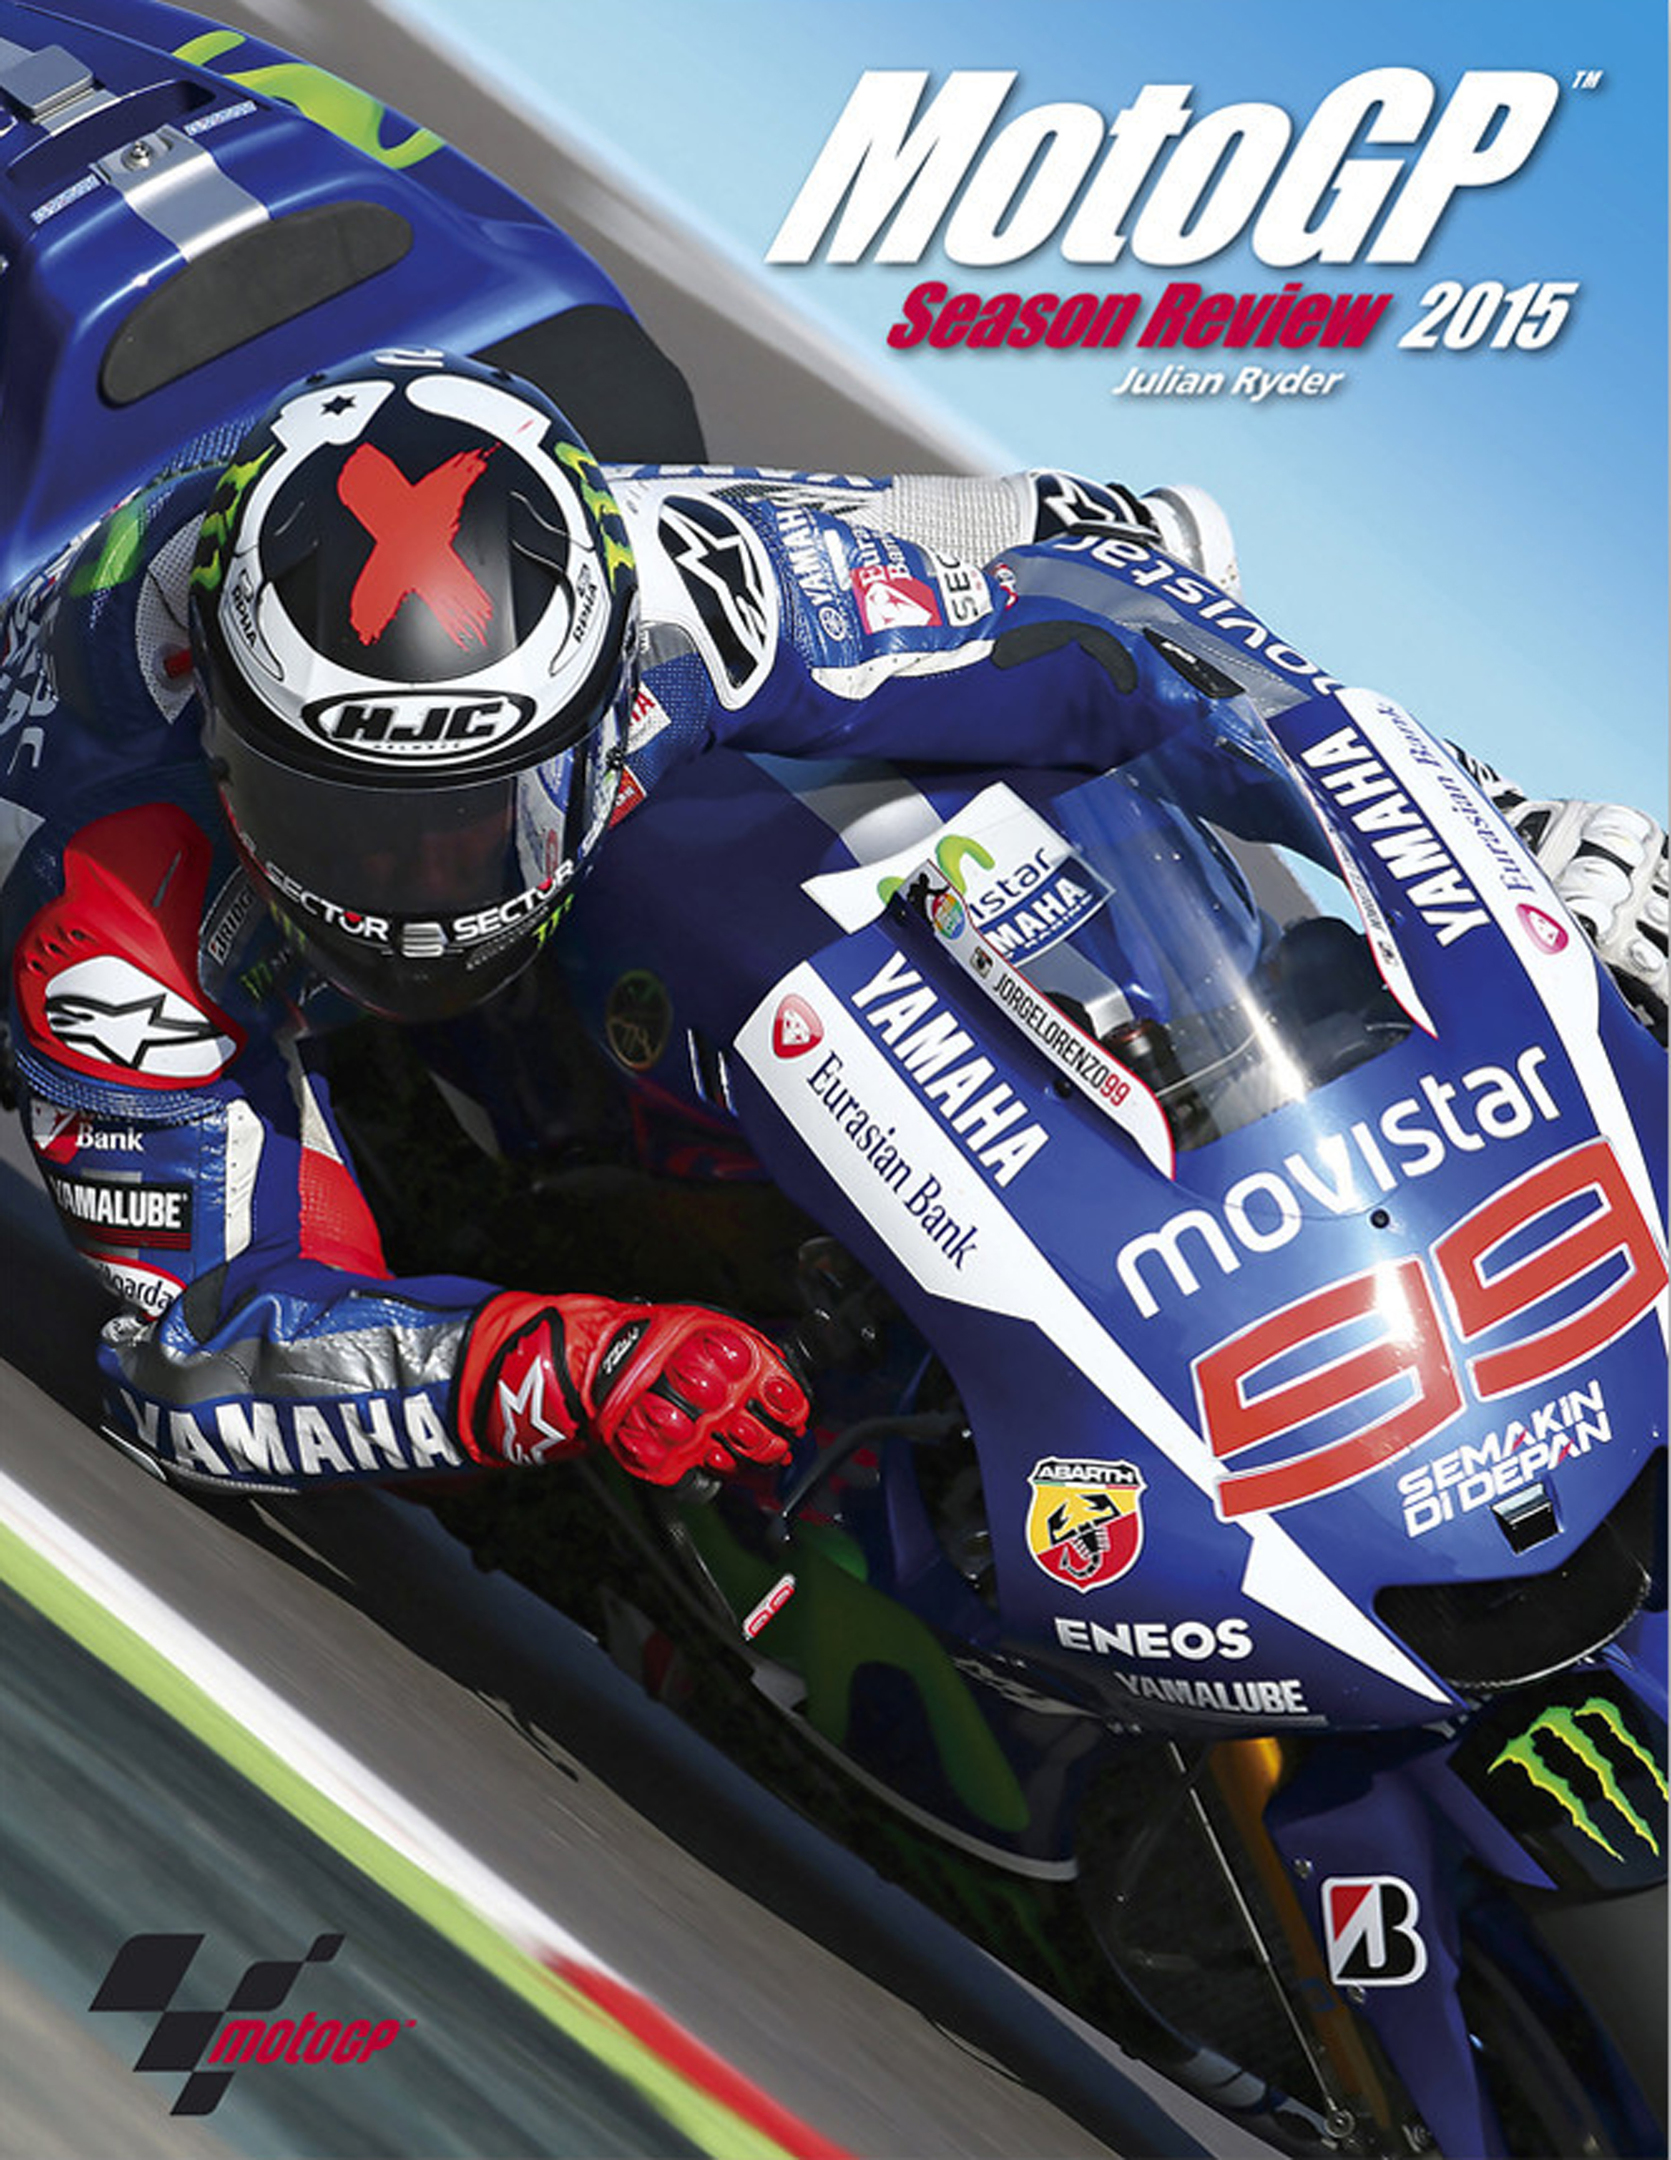 Moto GP 2015 Season Review